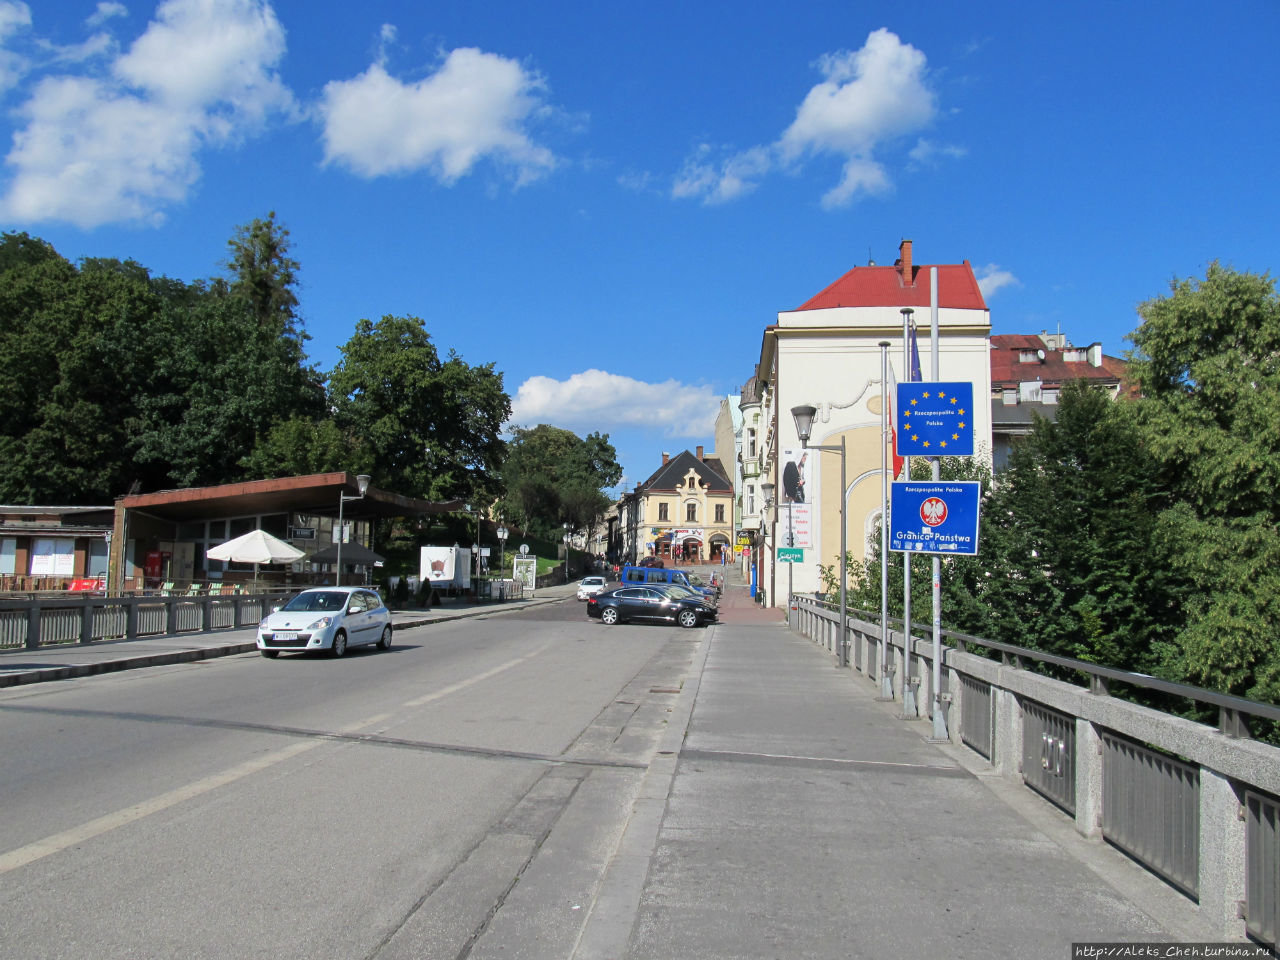 Мост разделяющий польскую и чешскую части города Цешин, Польша